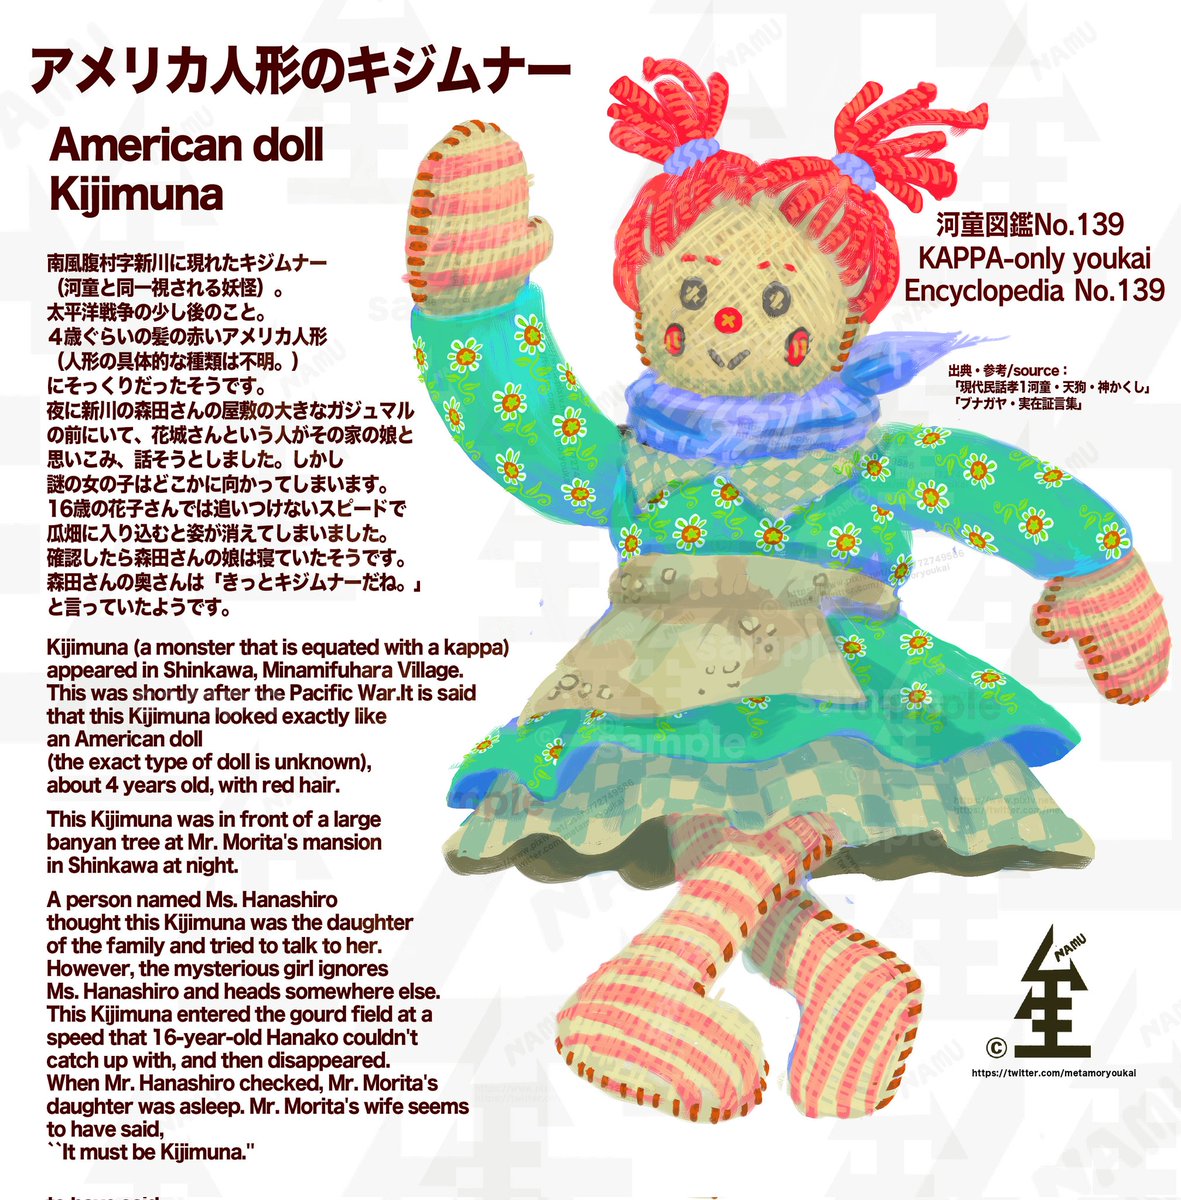 遅れてしまいましたが今日はアメリカ人形のキジムナーです！

瓜畑に入って姿が消えるお人形のようなキジムナー。

kappa-only youkai Encyclopedia
No.139:American doll kijimuna

#yokai  #JapaneseFolklore